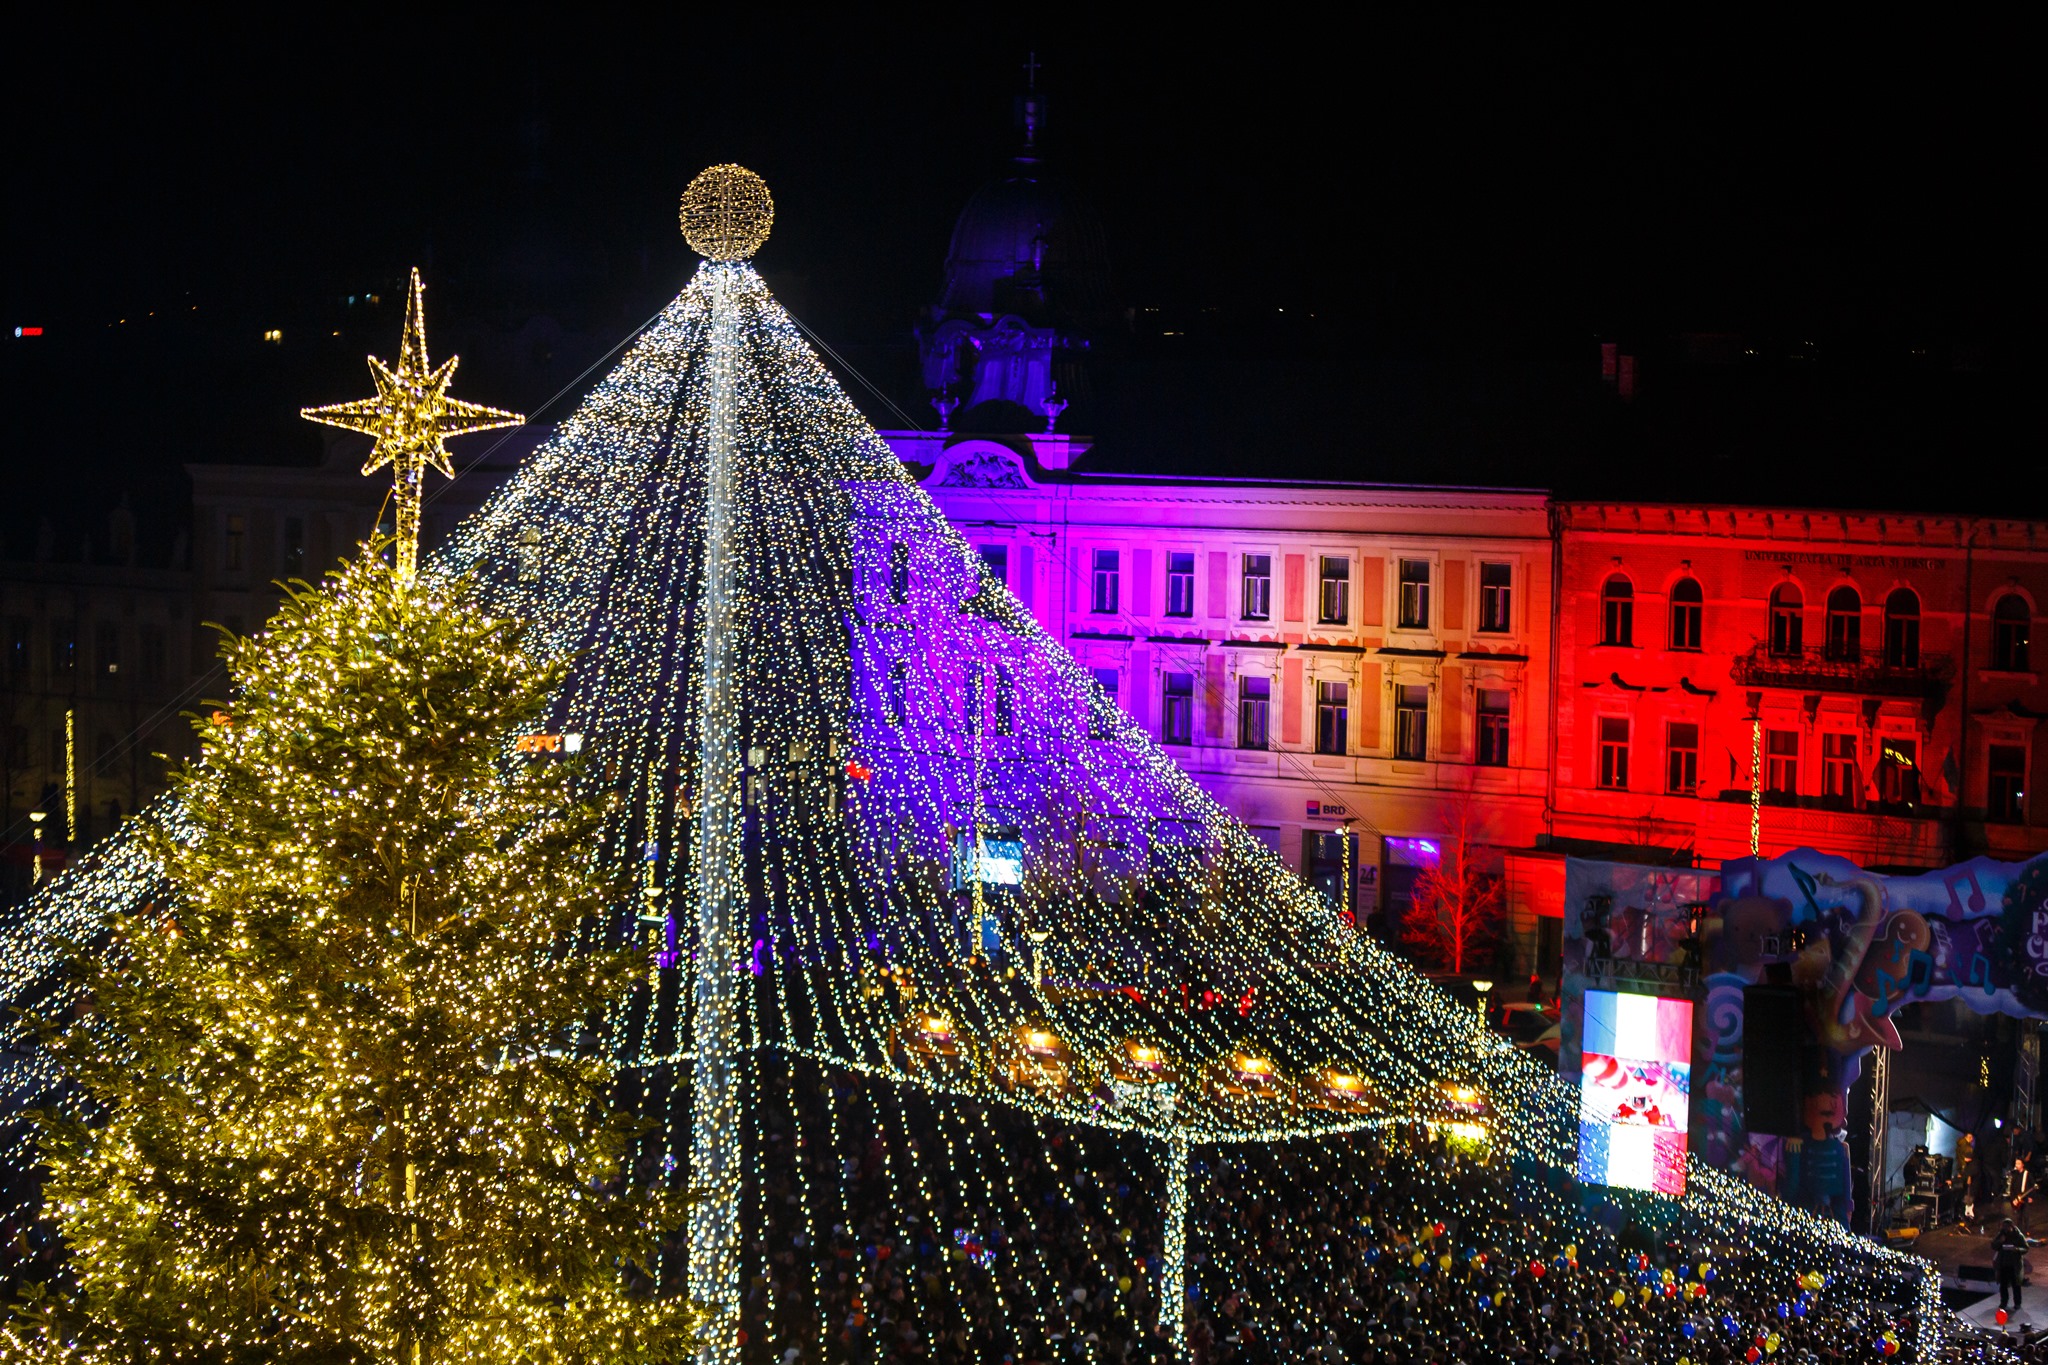 Iluminatul festiv va fi oprit / Foto: Municipiul Cluj-Napoca - Facebook